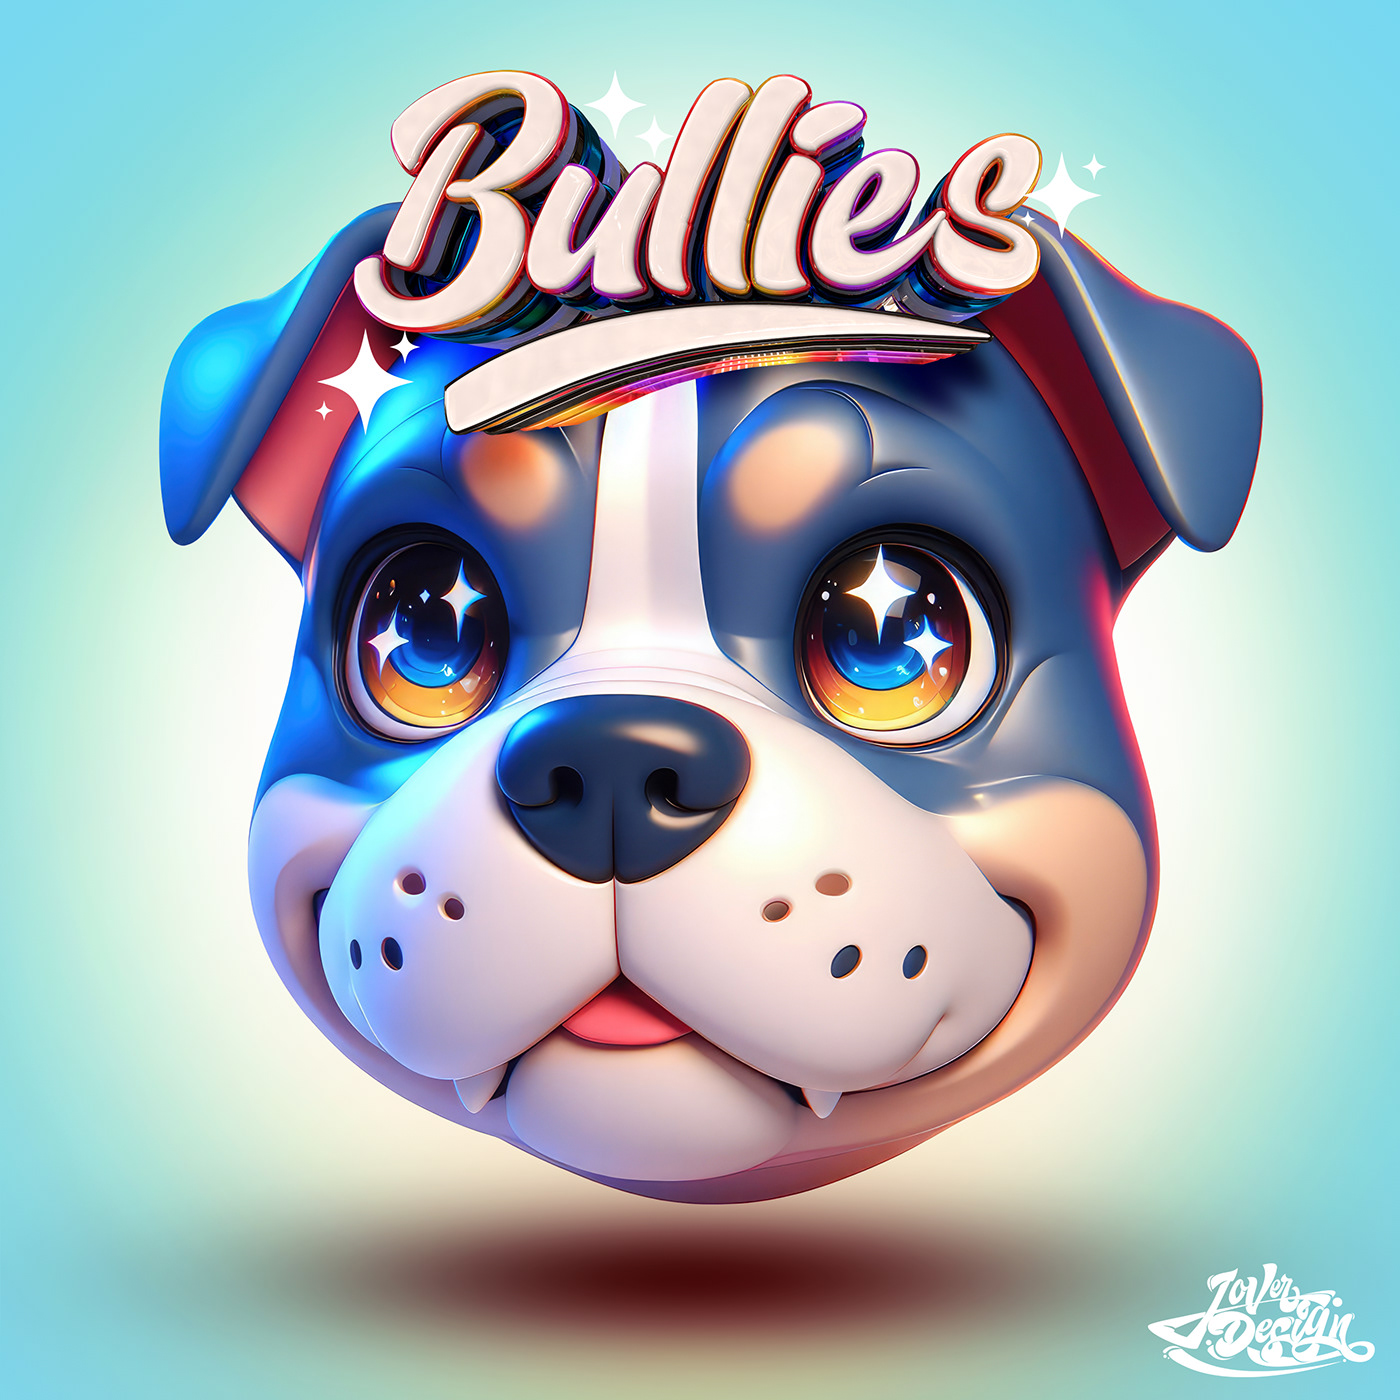 American Bully Pitbull 3D EXOTIC BULLIES american bully heads bullies bully logo